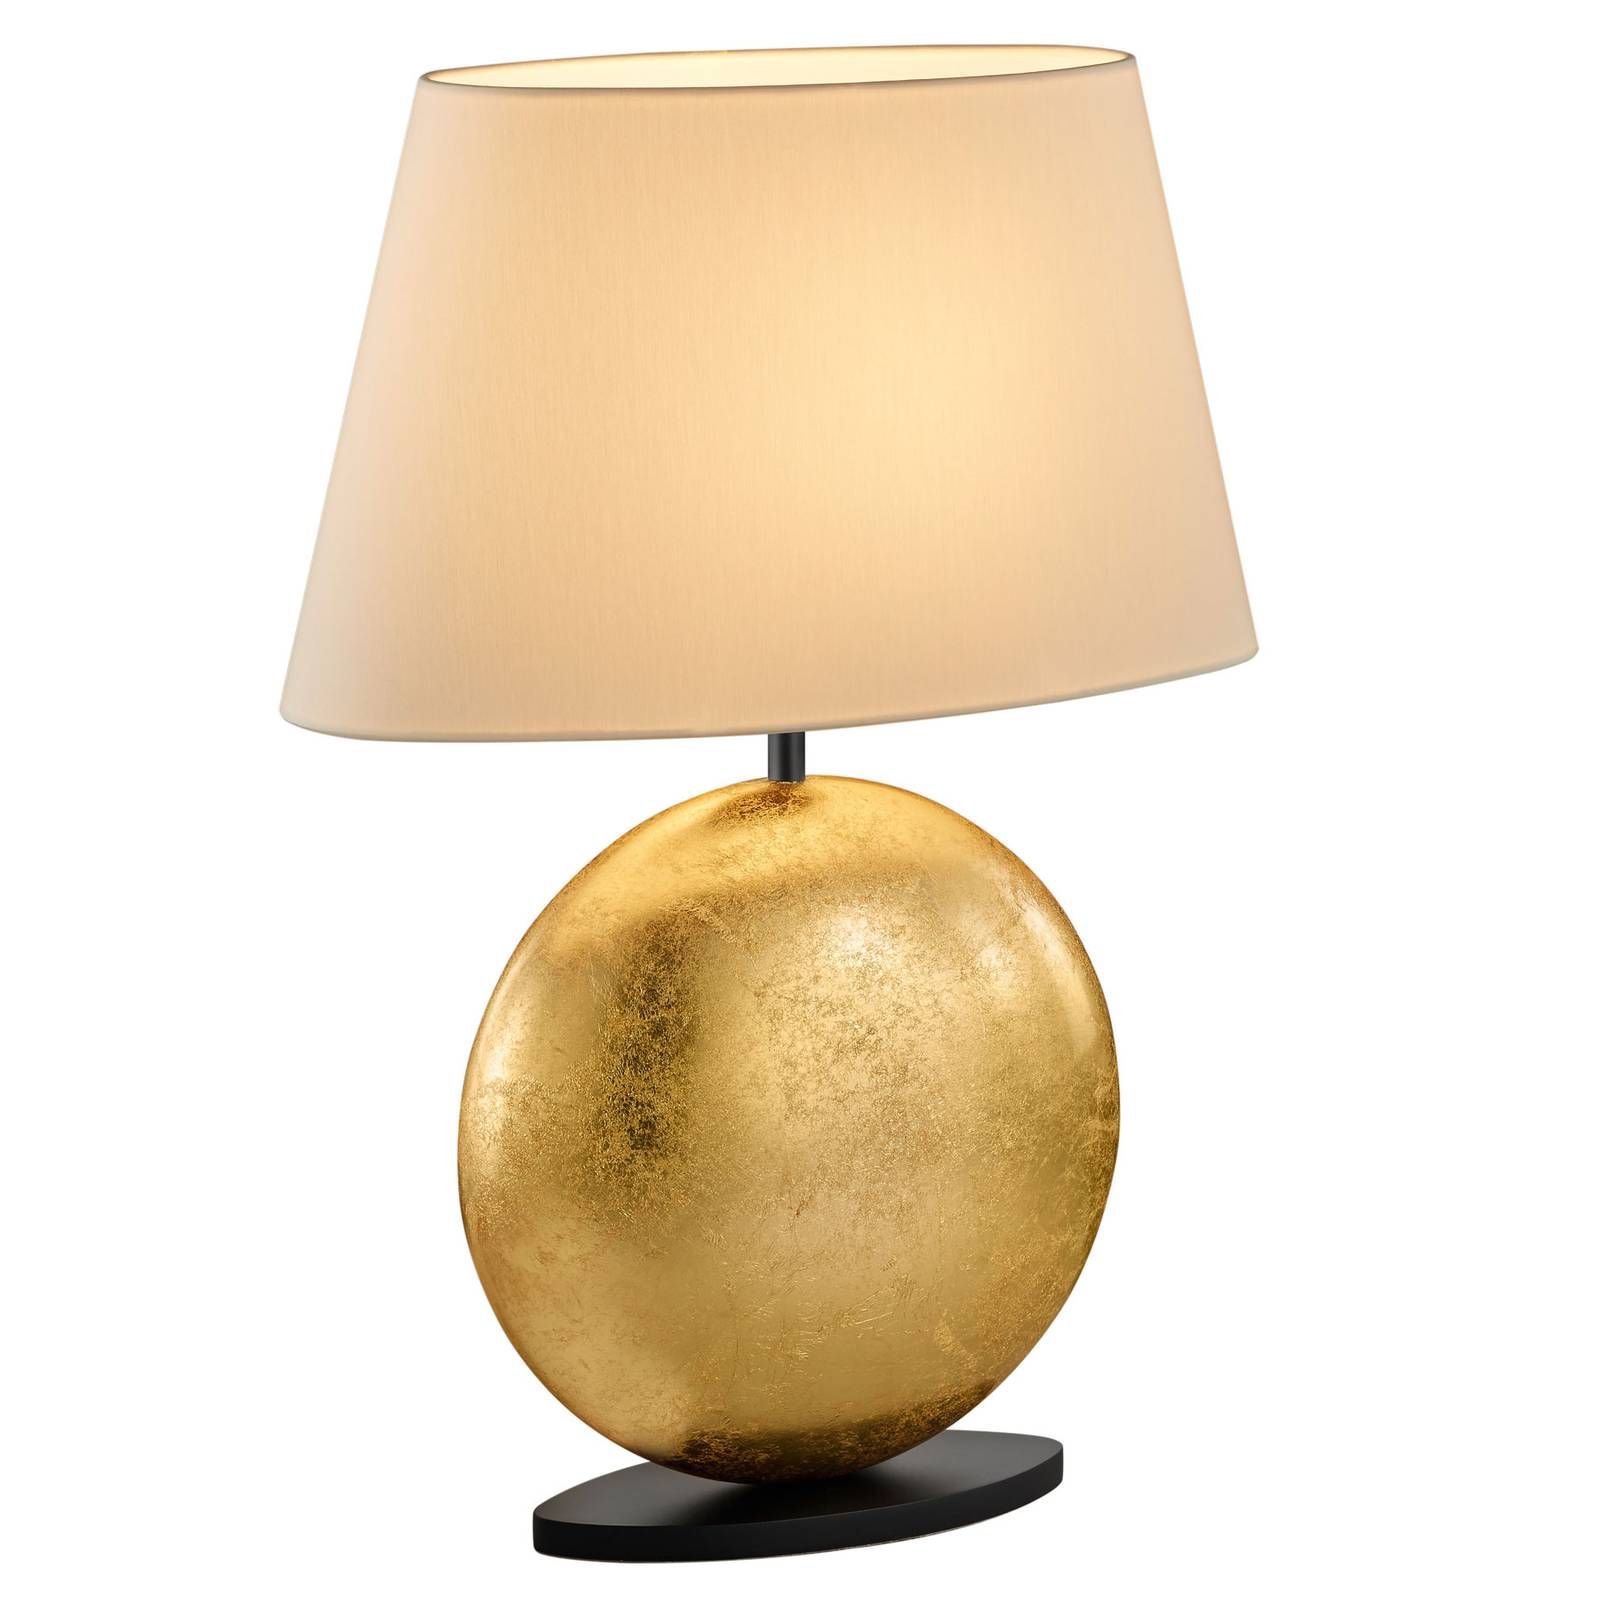 BANKAMP Mali stolová lampa, krémová/zlatá, 51 cm, Obývacia izba / jedáleň, chinc, hliník, E27, 100W, P: 36 cm, L: 16 cm, K: 51cm